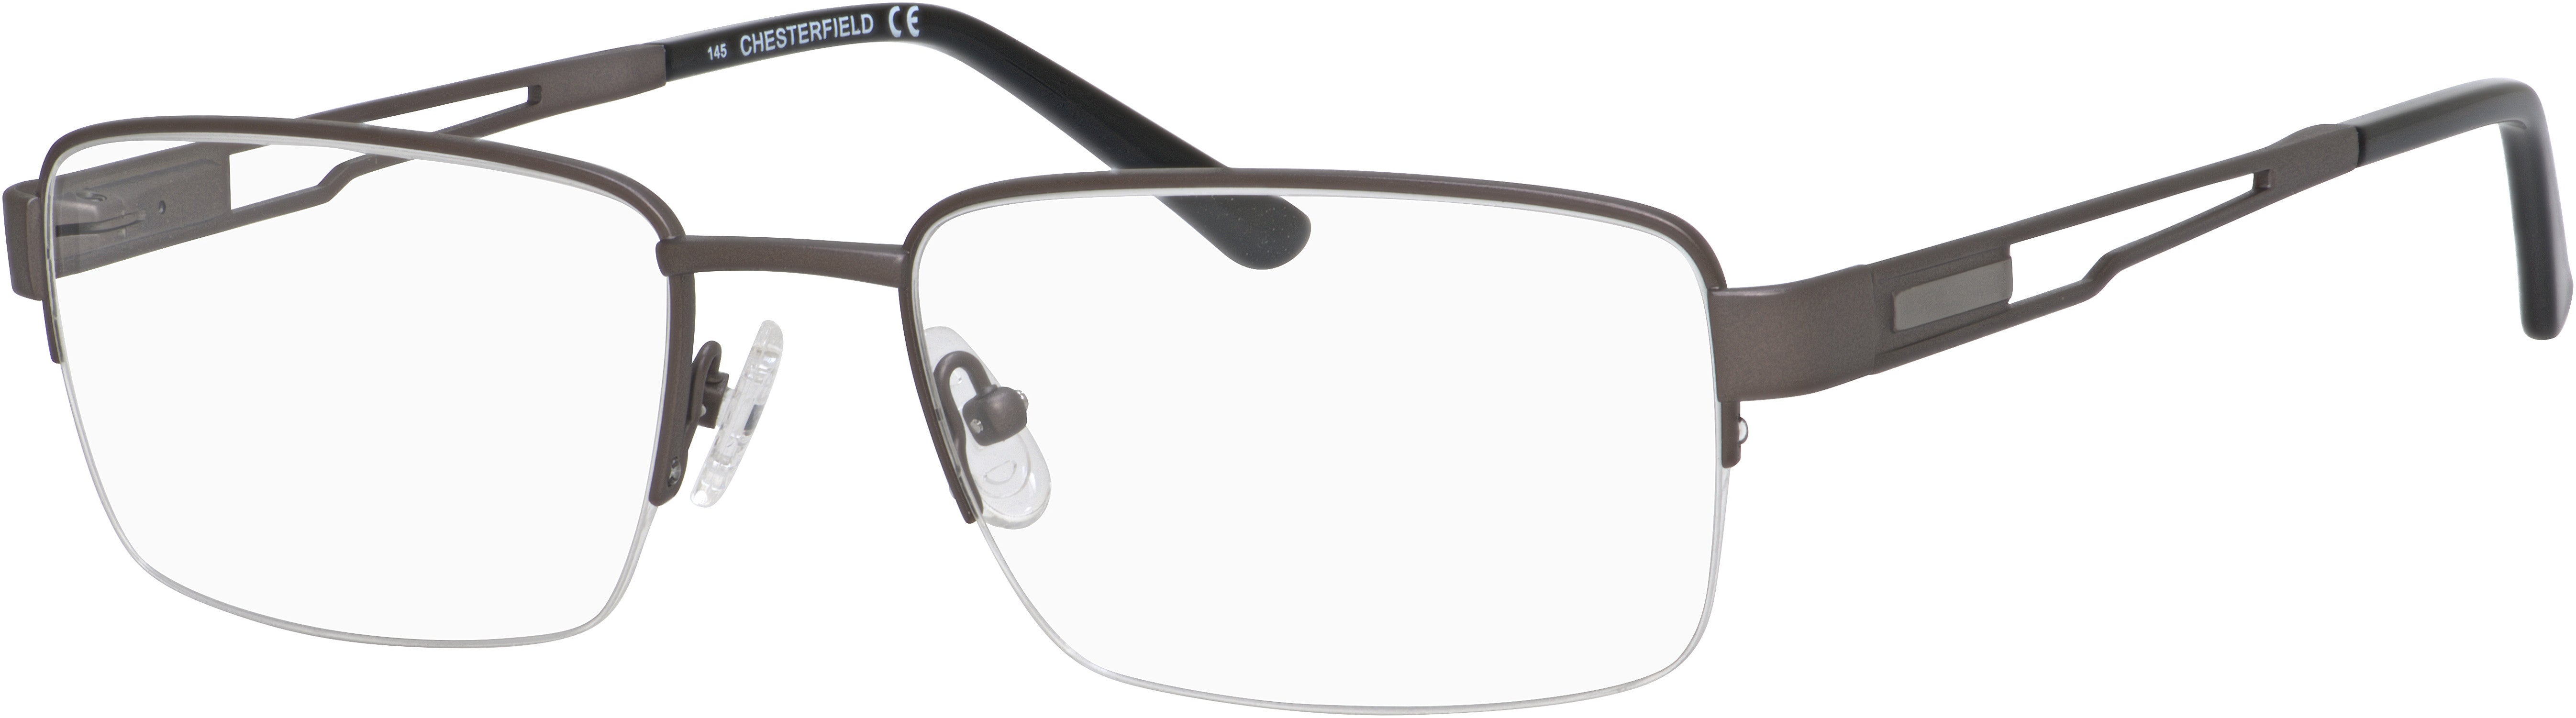  Chesterfield 882/T Rectangular Eyeglasses 0JCA-0JCA  Brushed Gray (00 Demo Lens)